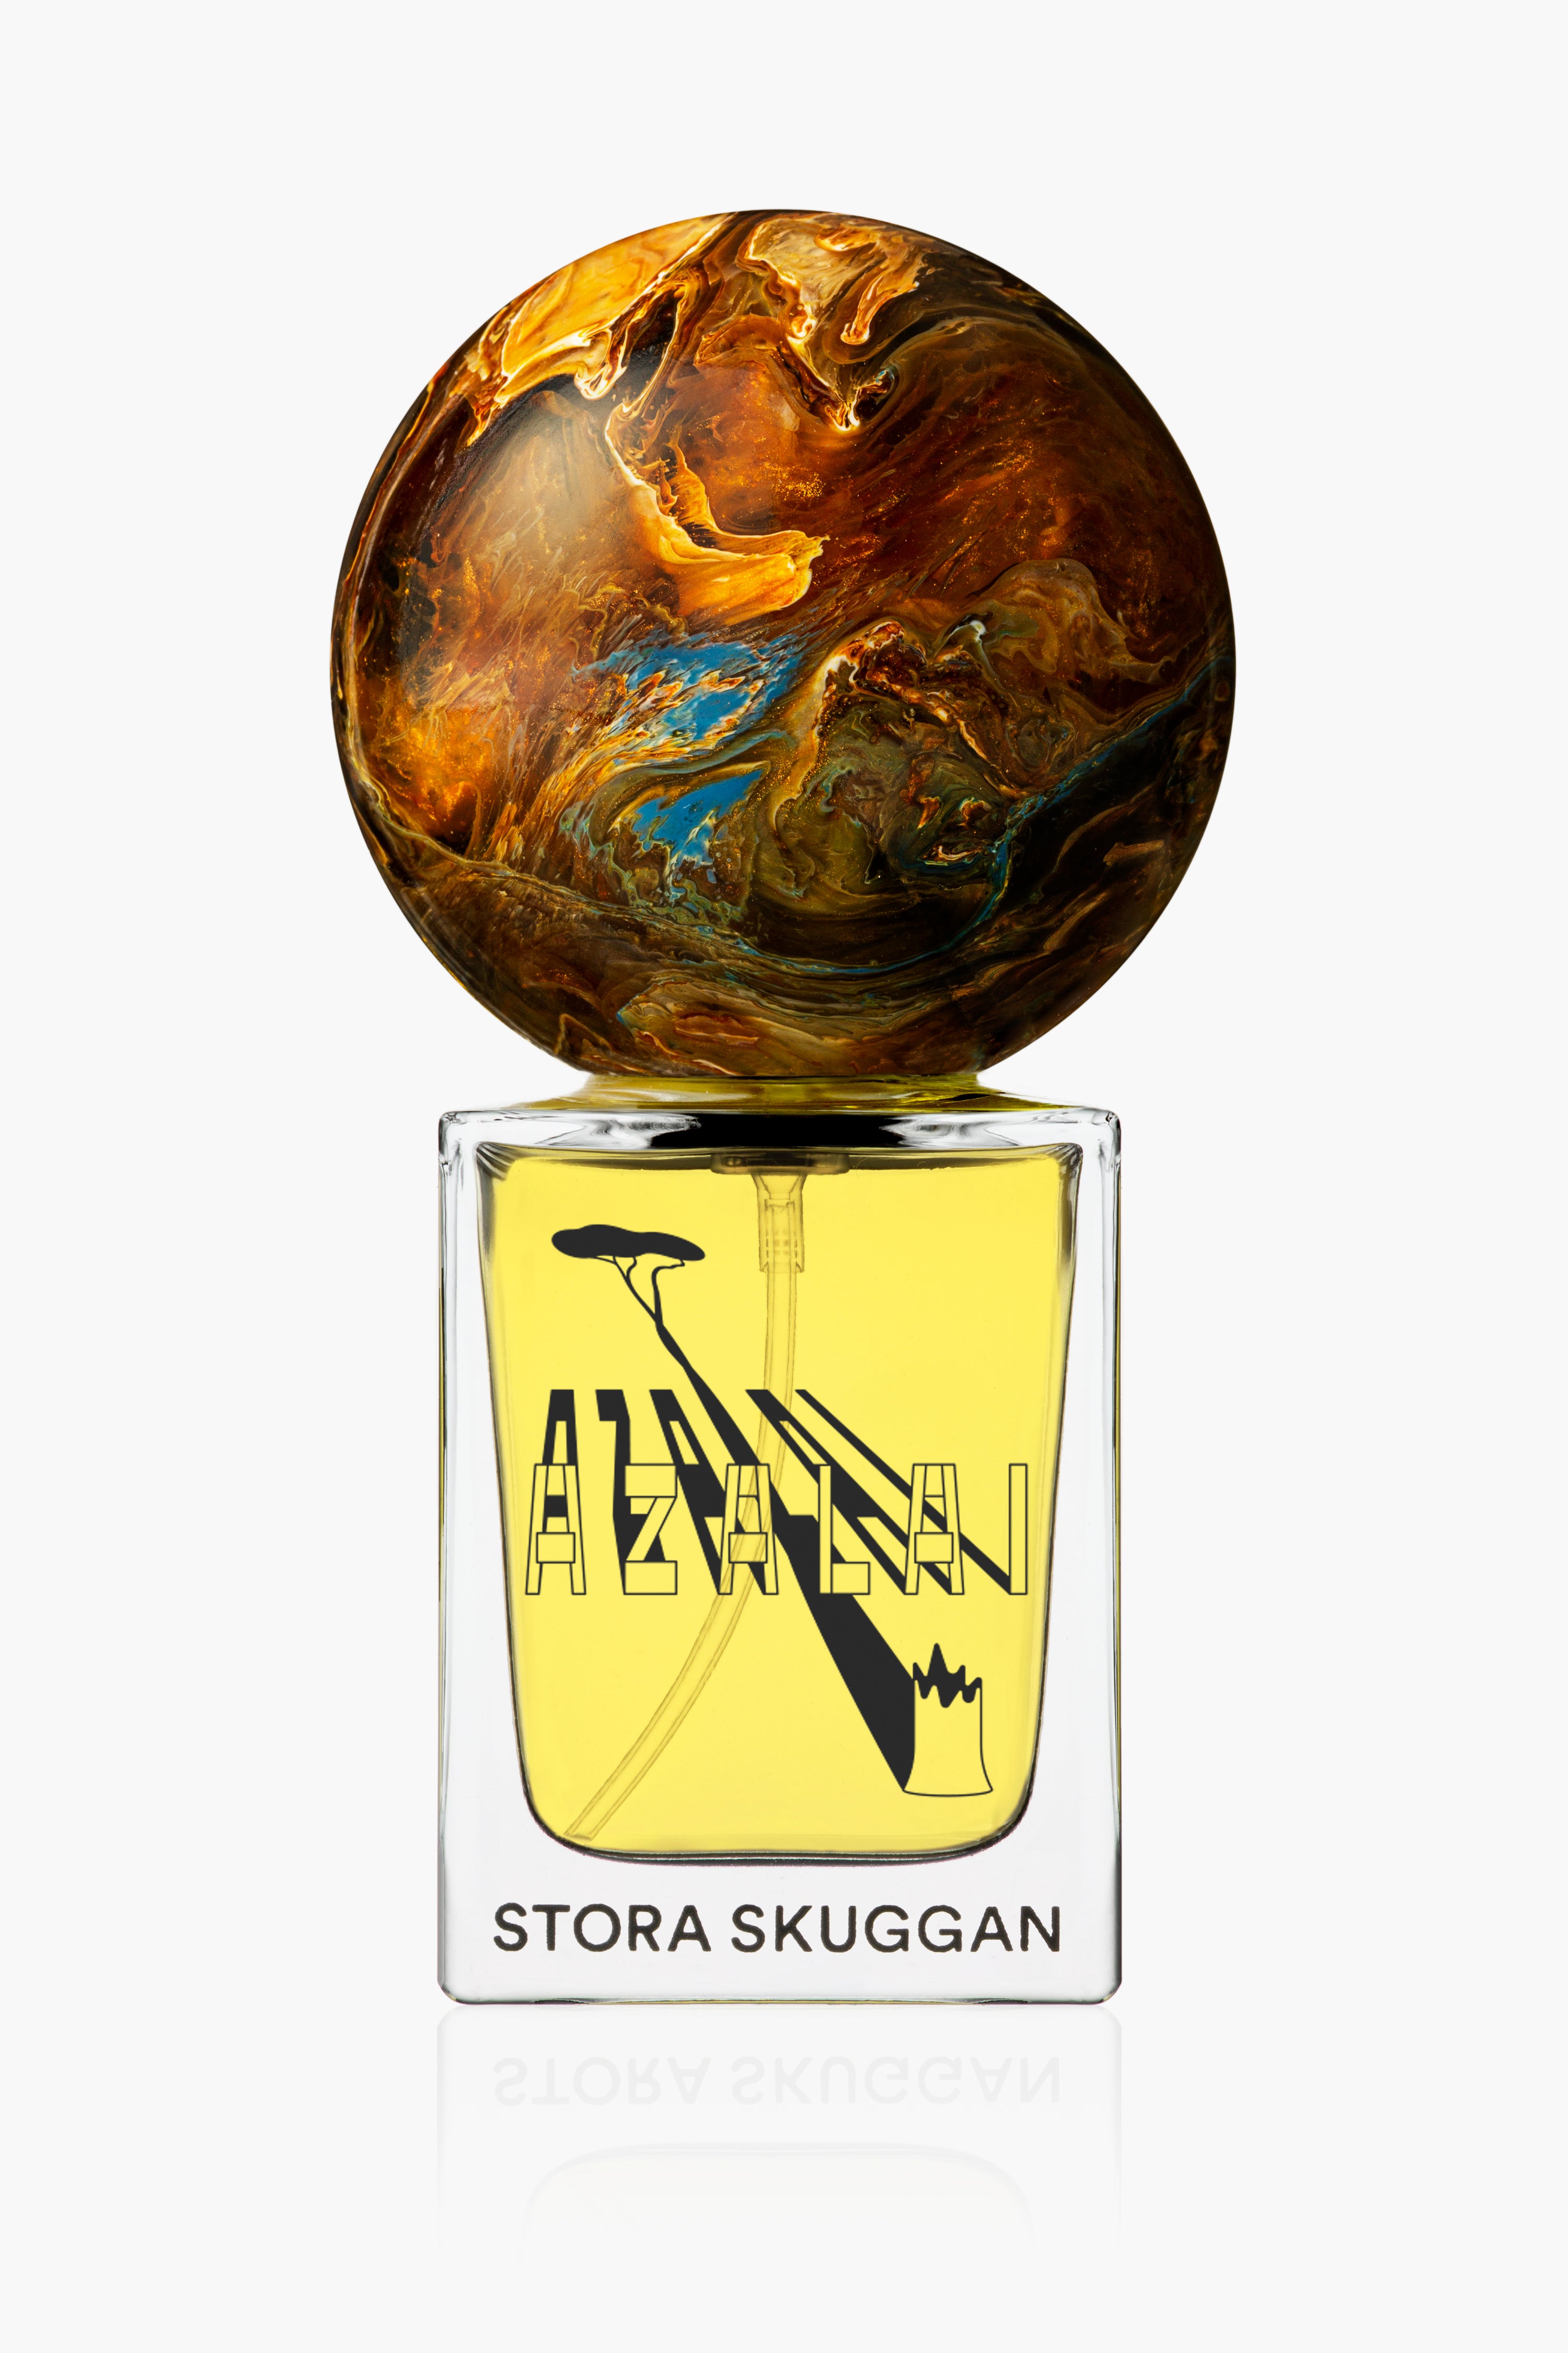 Azalai-Stora Skuggan-KIOSK48TH